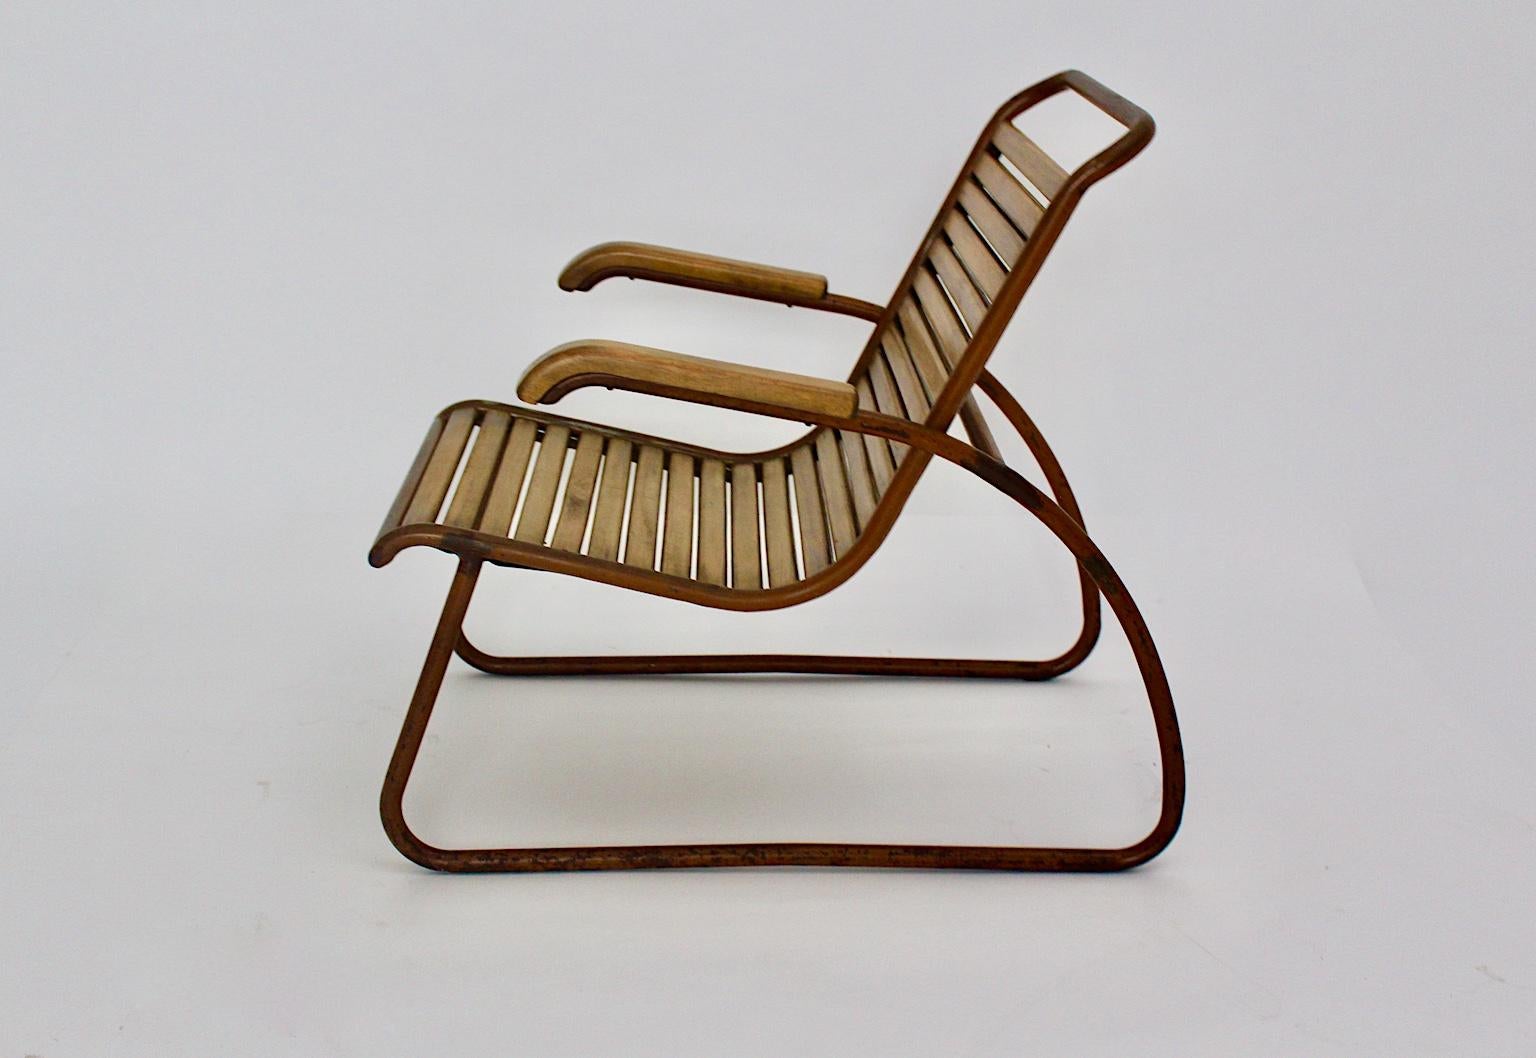 Bauhaus-Ära Vintage Buche Metall Lounge Stuhl oder Sessel, die in den 1920er Jahren entworfen wurde.
24 Buchenholzlatten und ein Stahlrohrrahmen mit schönen Farbresten bilden diesen außergewöhnlichen Loungesessel. Eine schöne geschwungene Form und